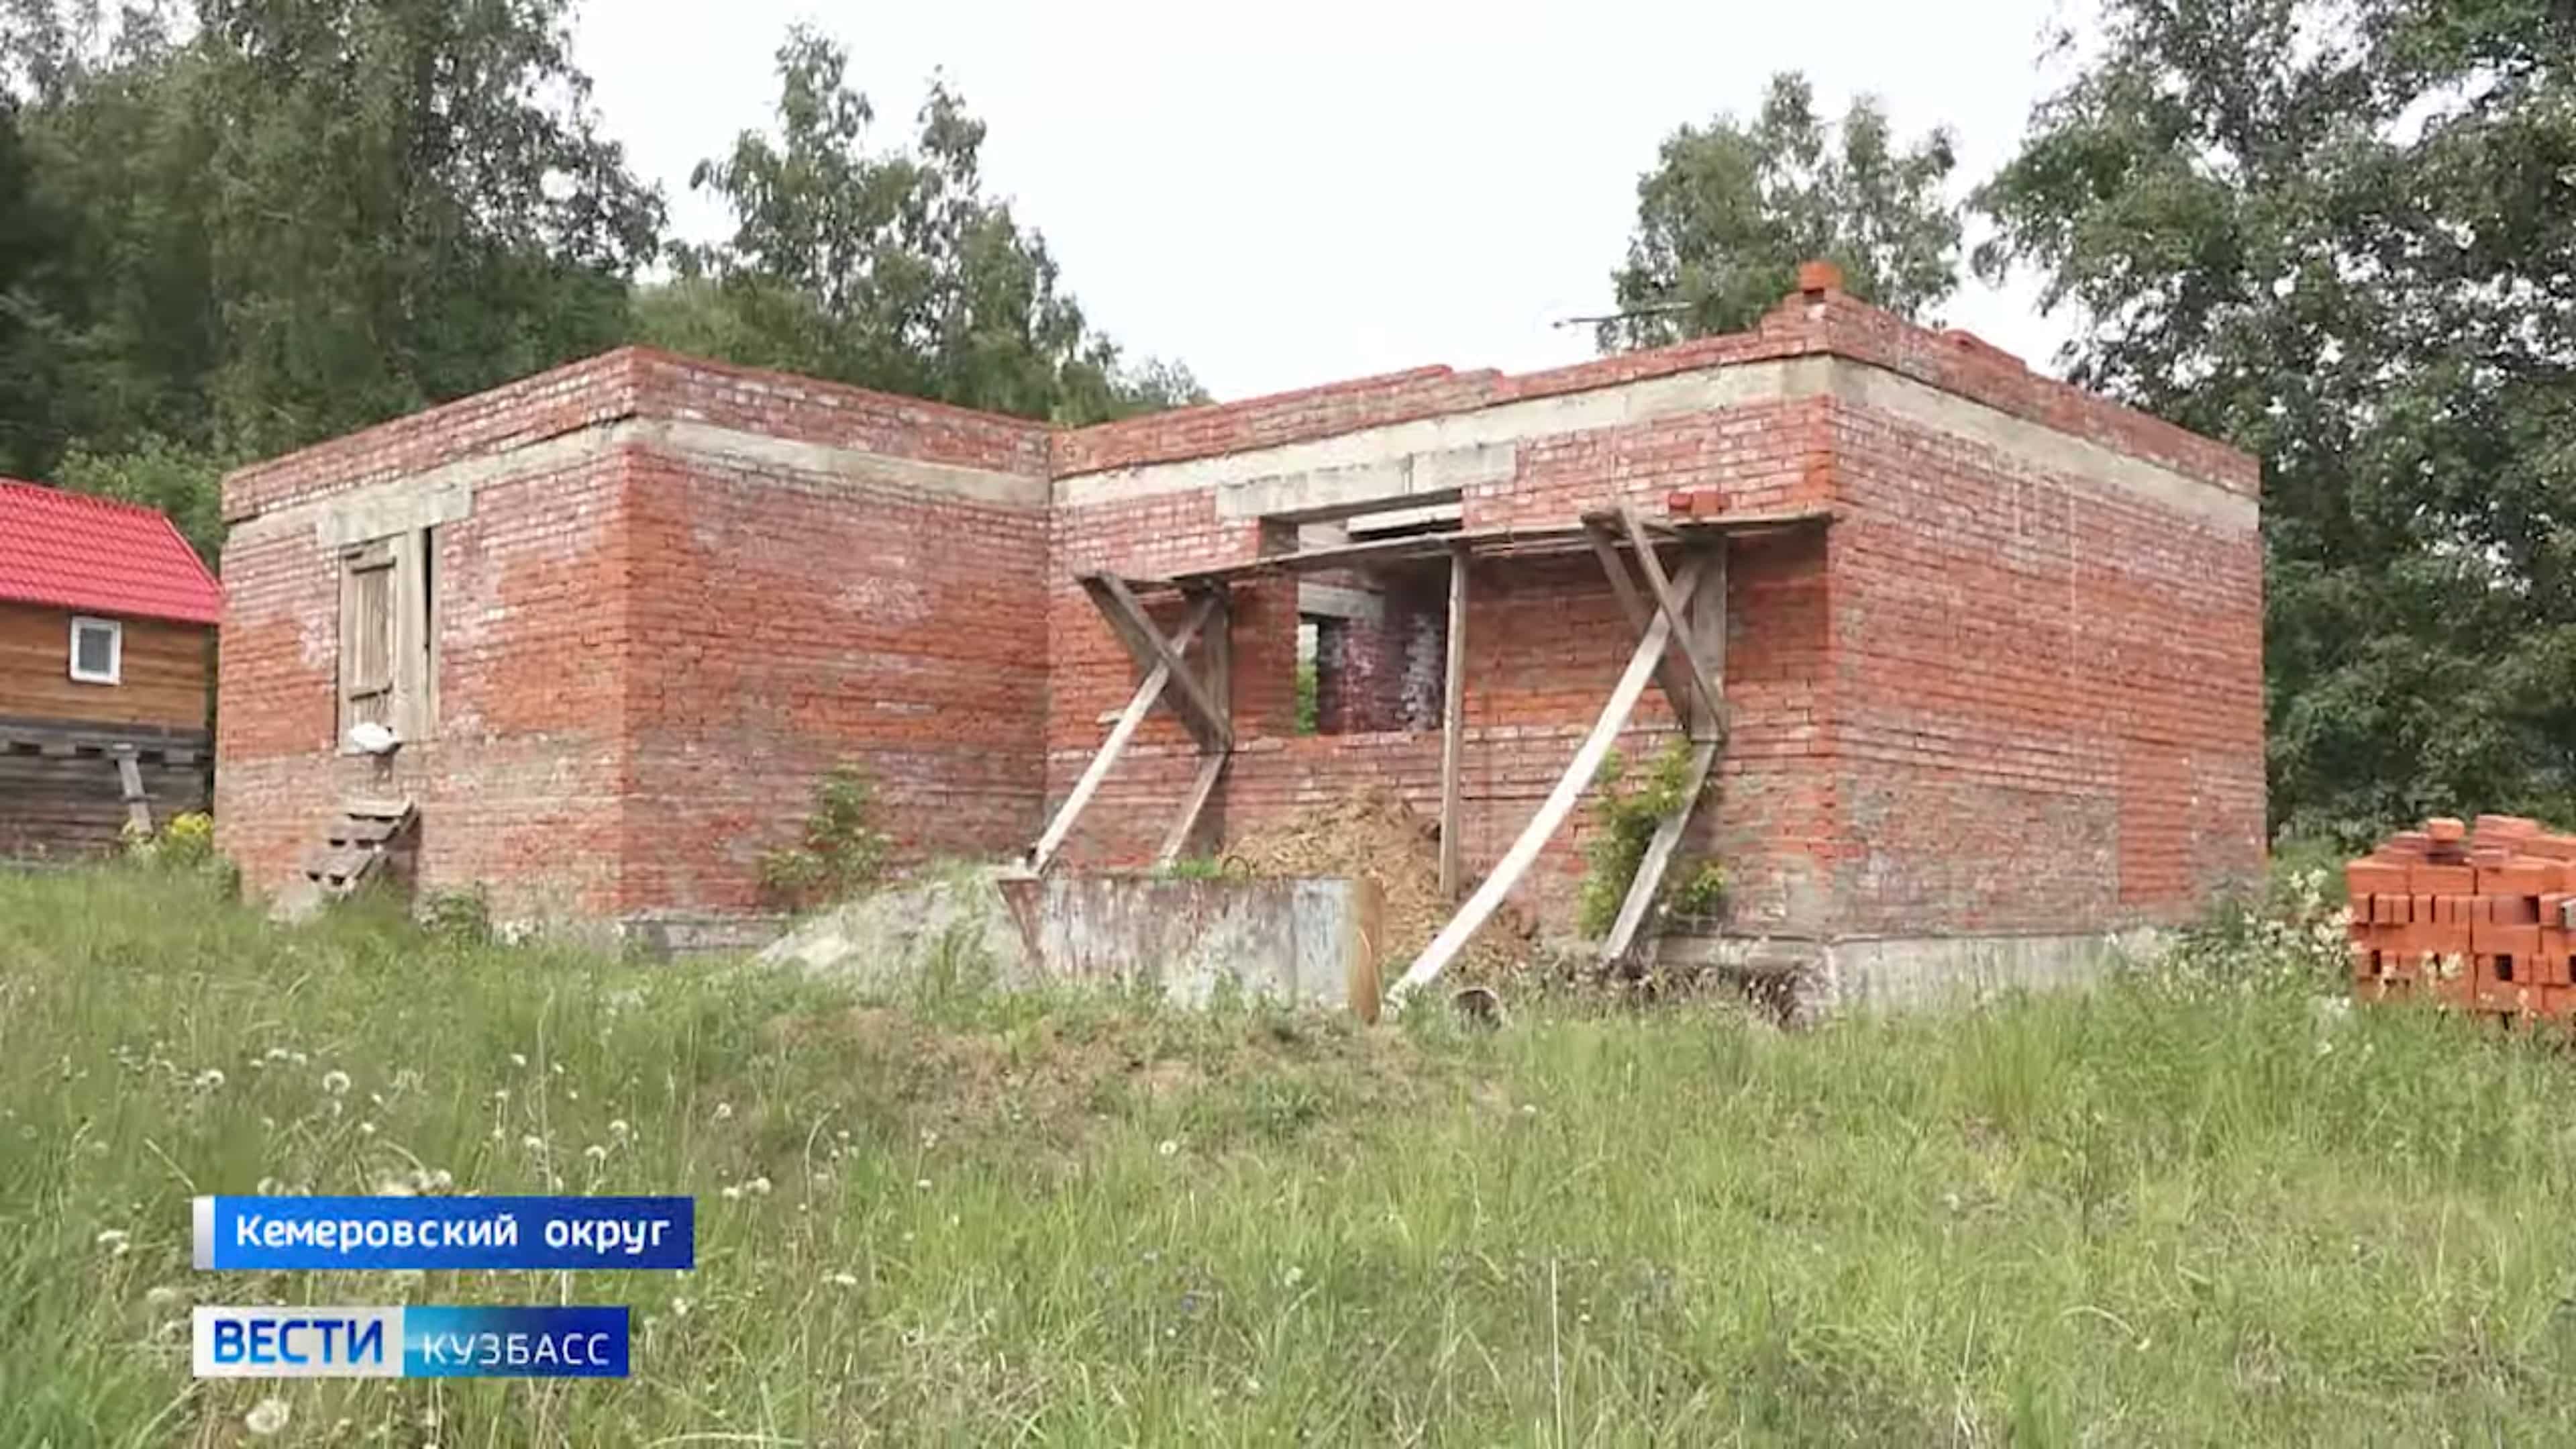 Casa inacabada estava sendo usada como fazenda de mineração e energia estava sendo furtada. Fonte: Notícias 42/Reprodução.